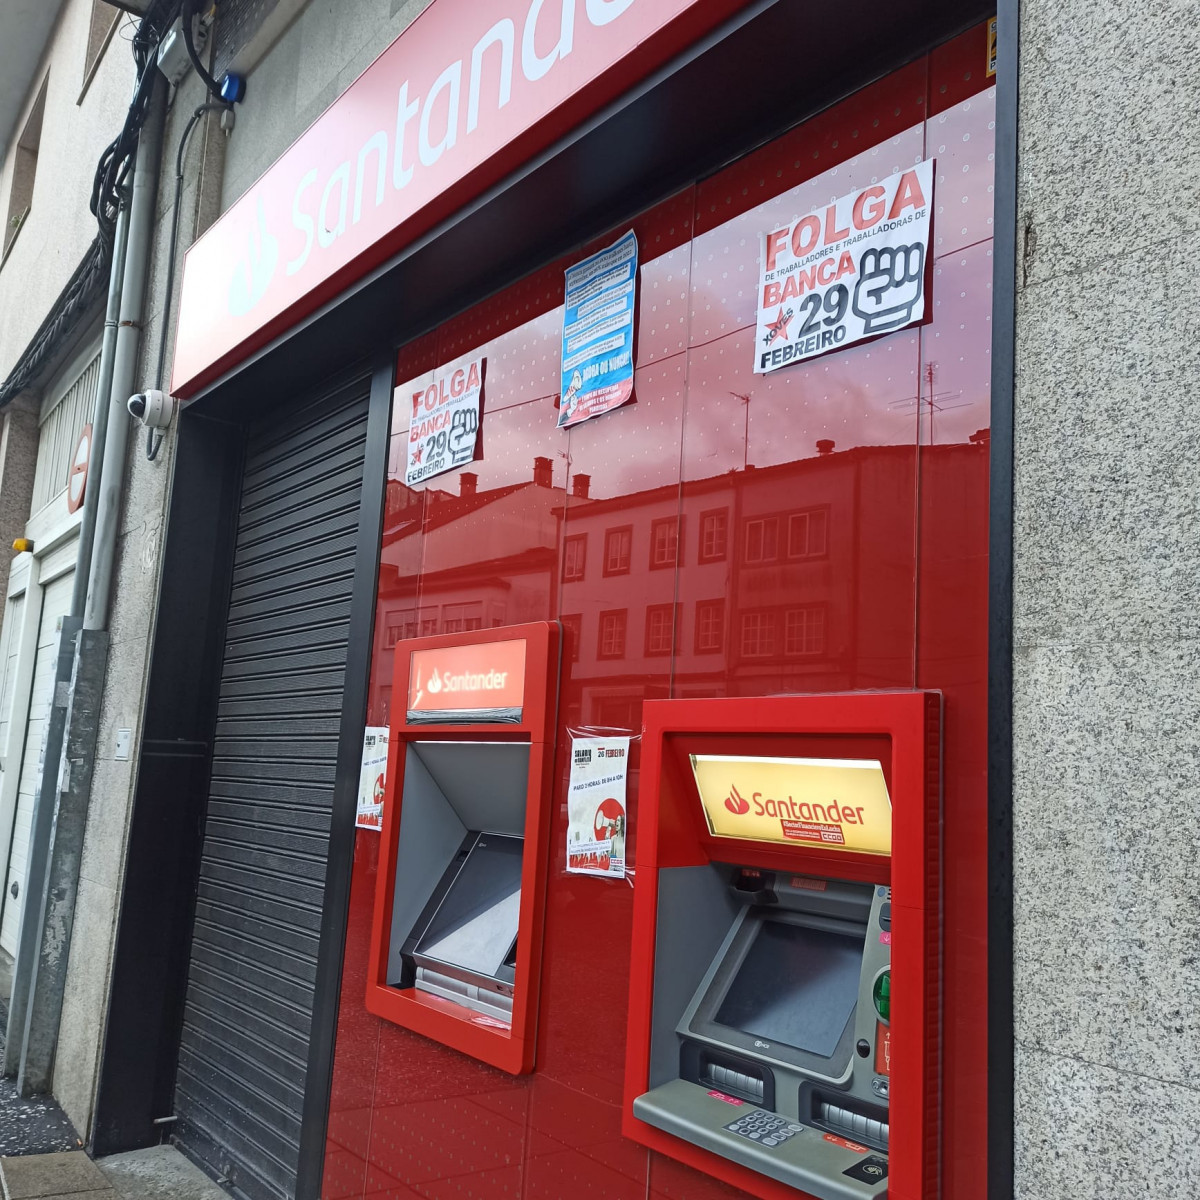 Oficina del Santander cerrada en la calle Concheiros, en Santiago, en la mañana del 26 de febrero durante el paro de dos horas convocado en la banca